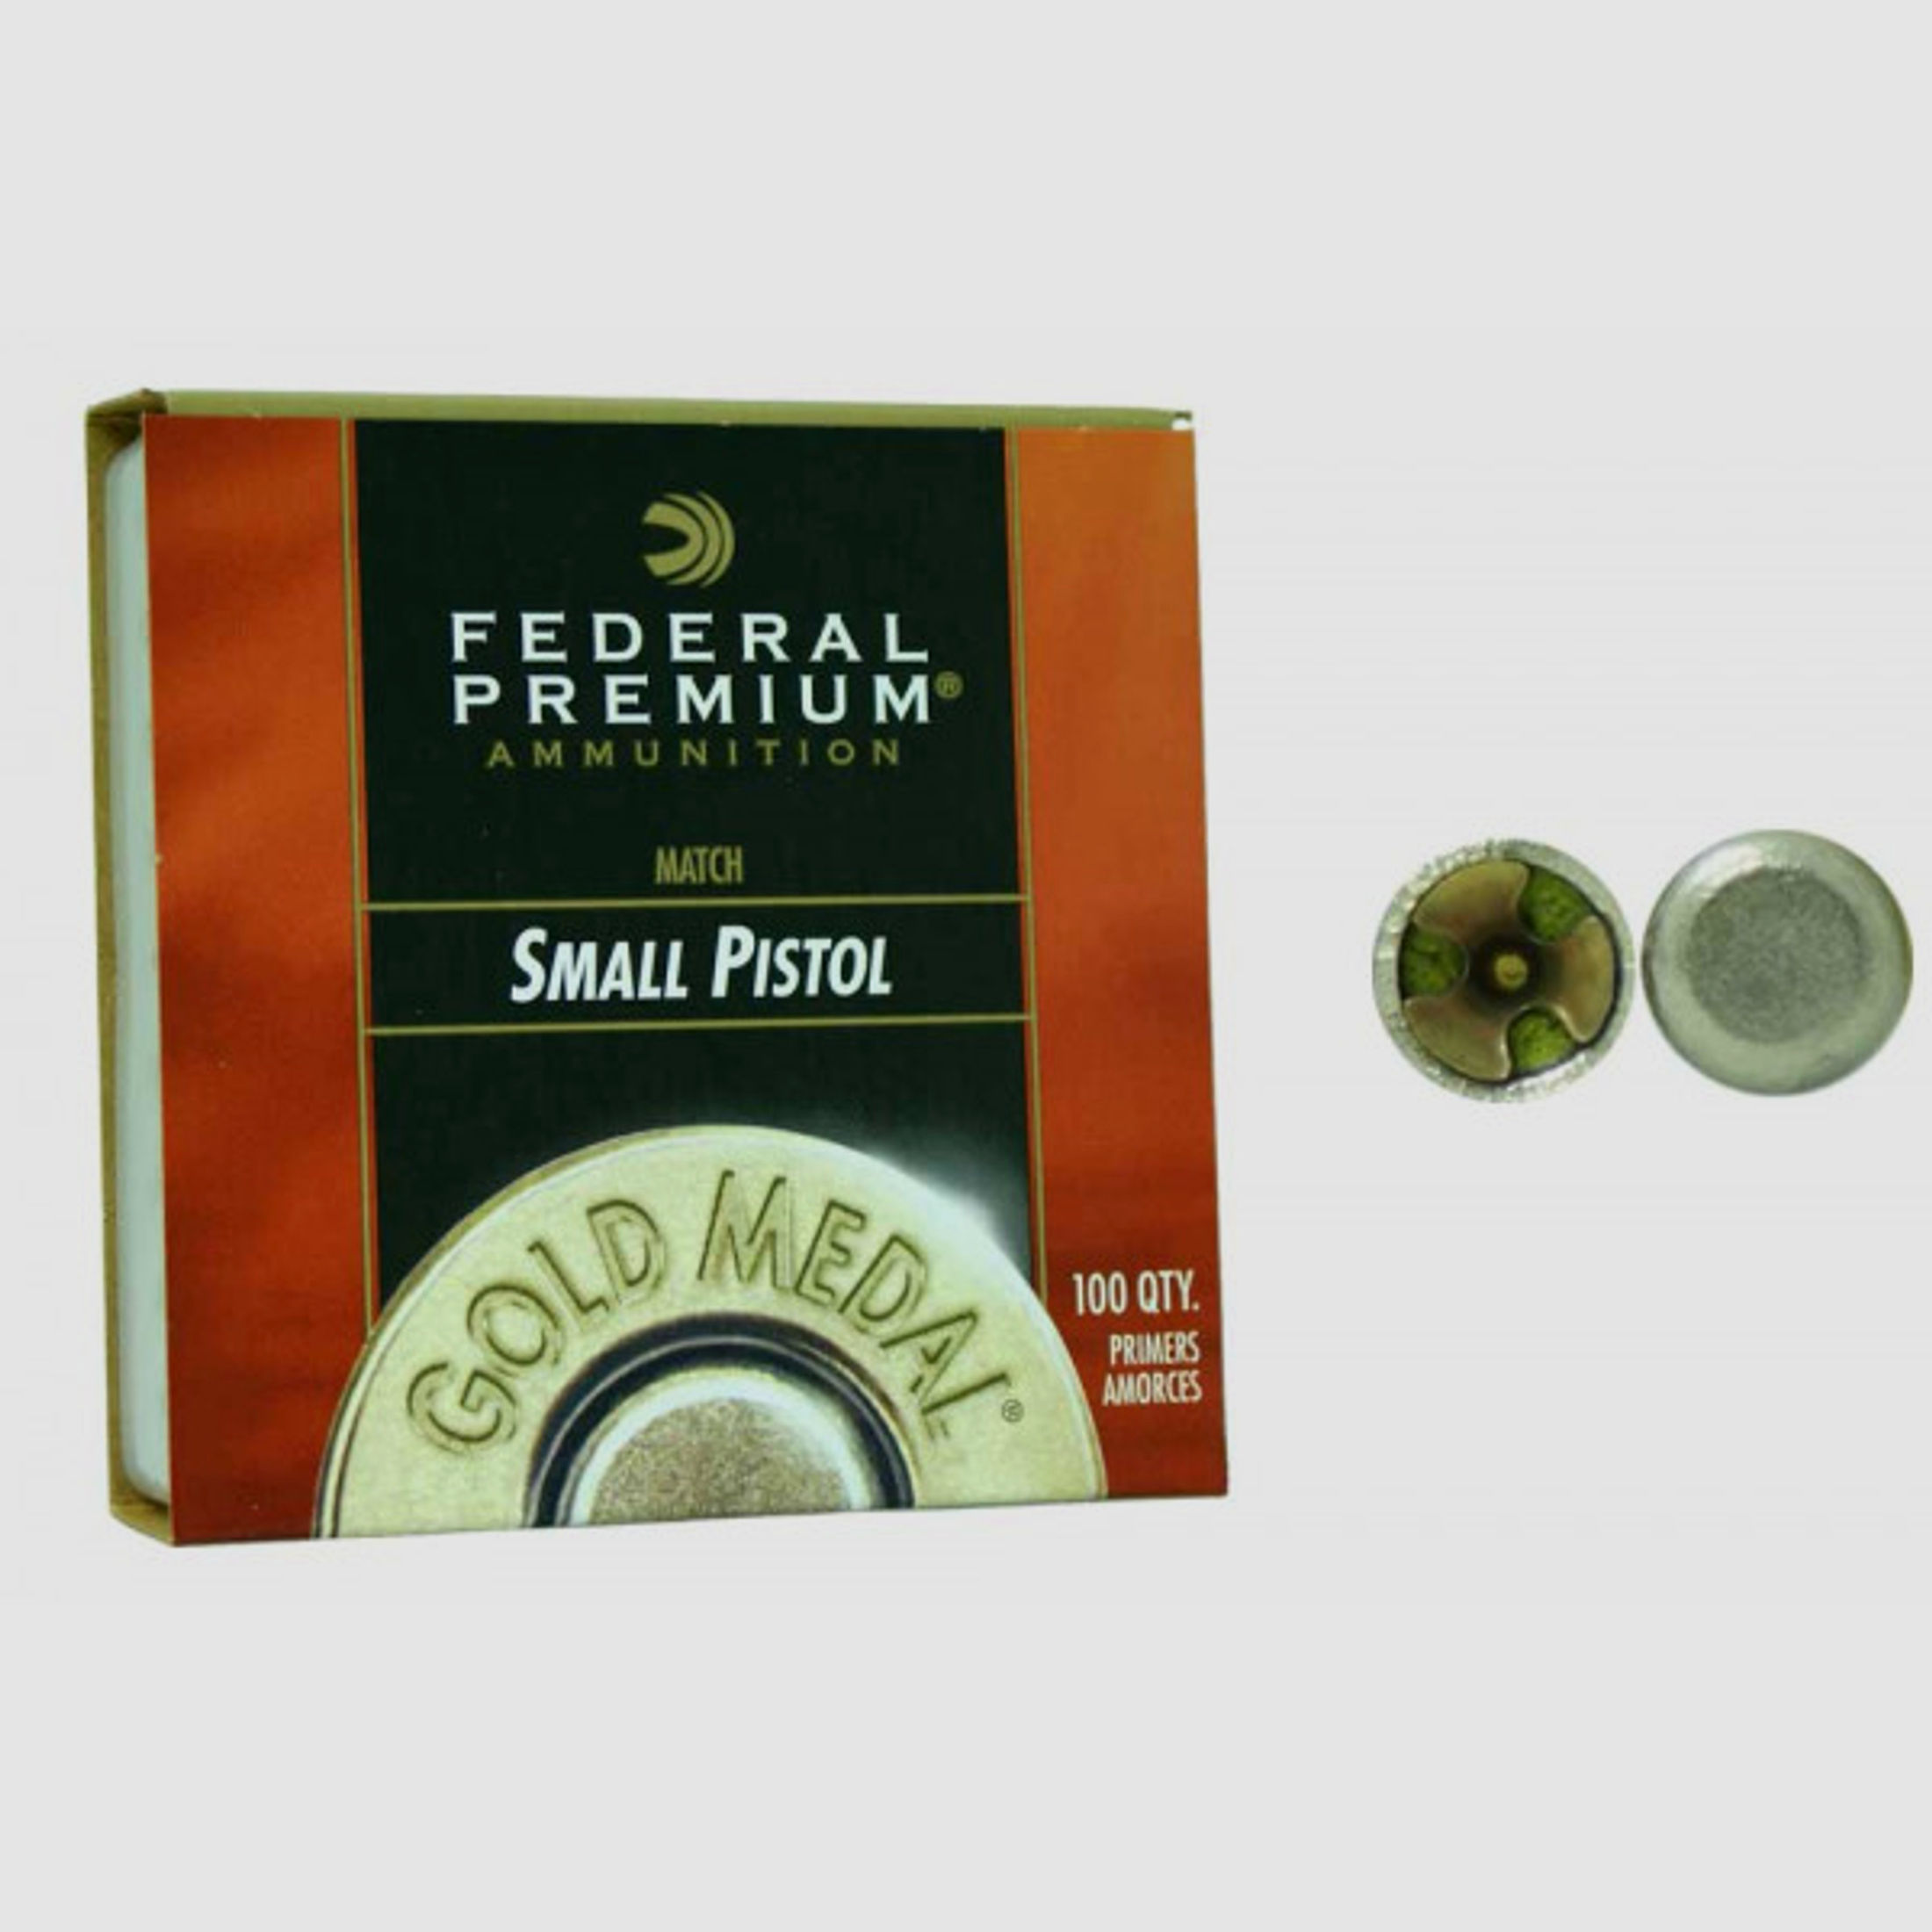 Federal Premium Boxer Small Pistol Zündhütchen #GM100M